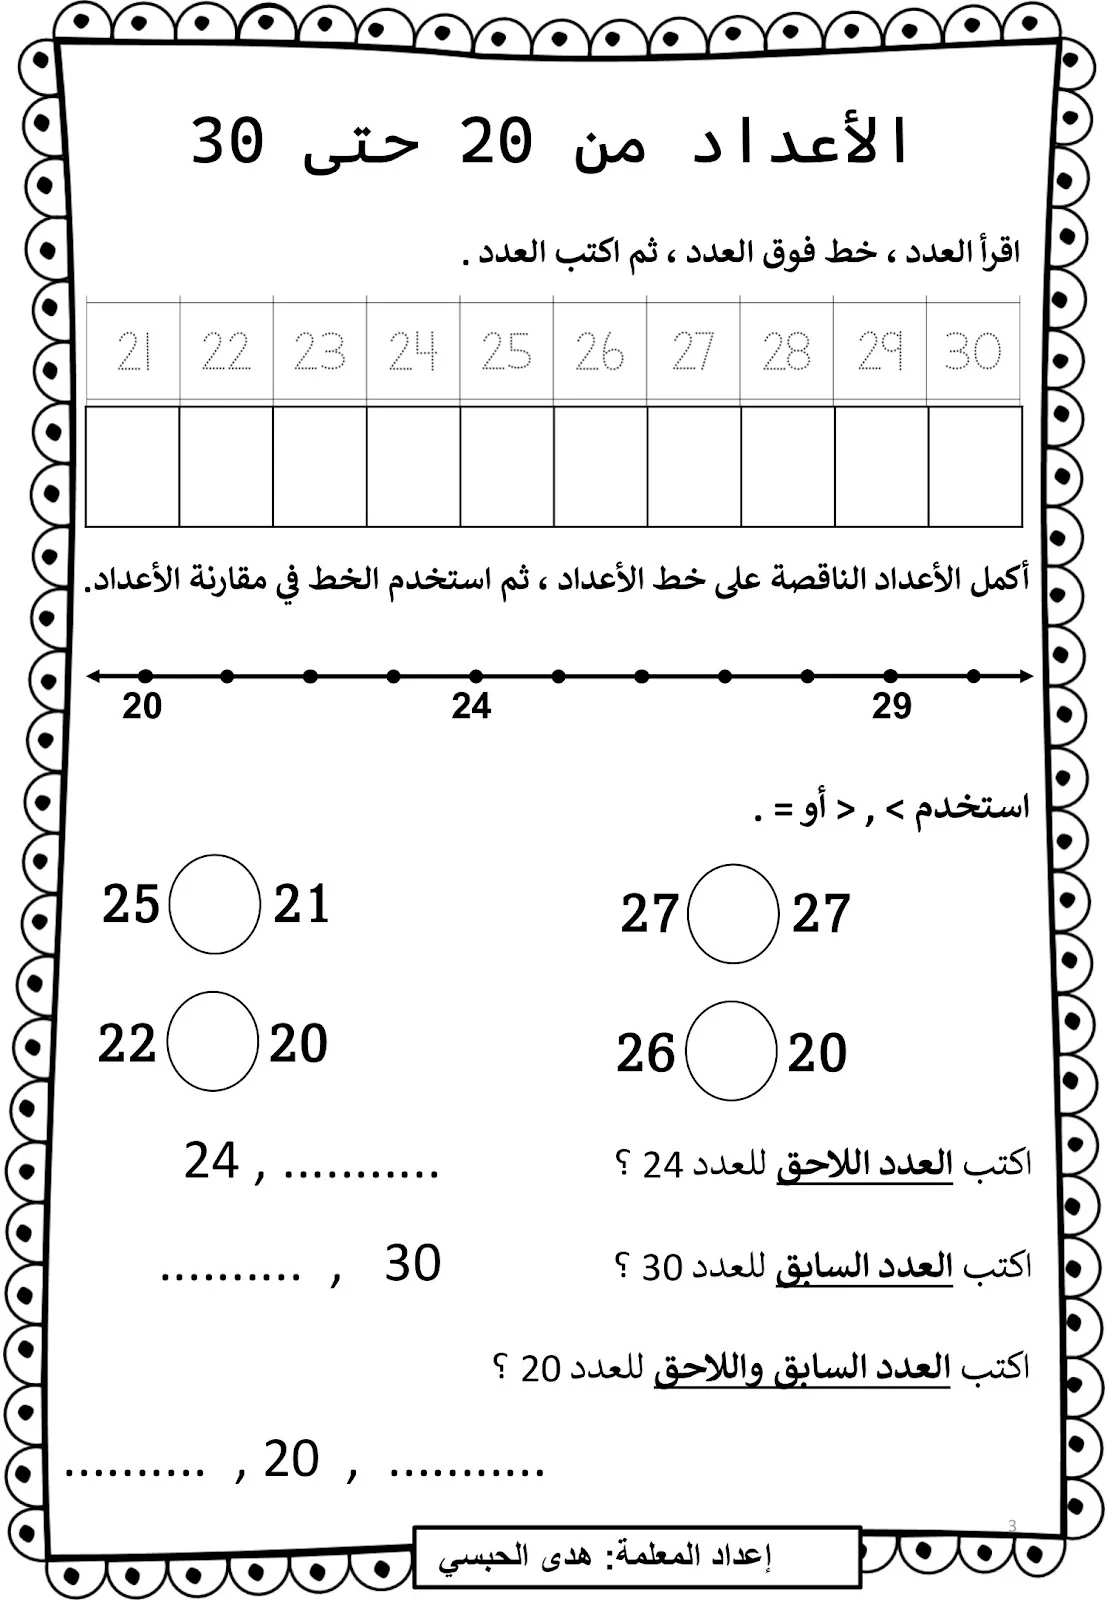 مذكرة ألارقام العربية إلى 120 برابط تحميل مجاني مباشر